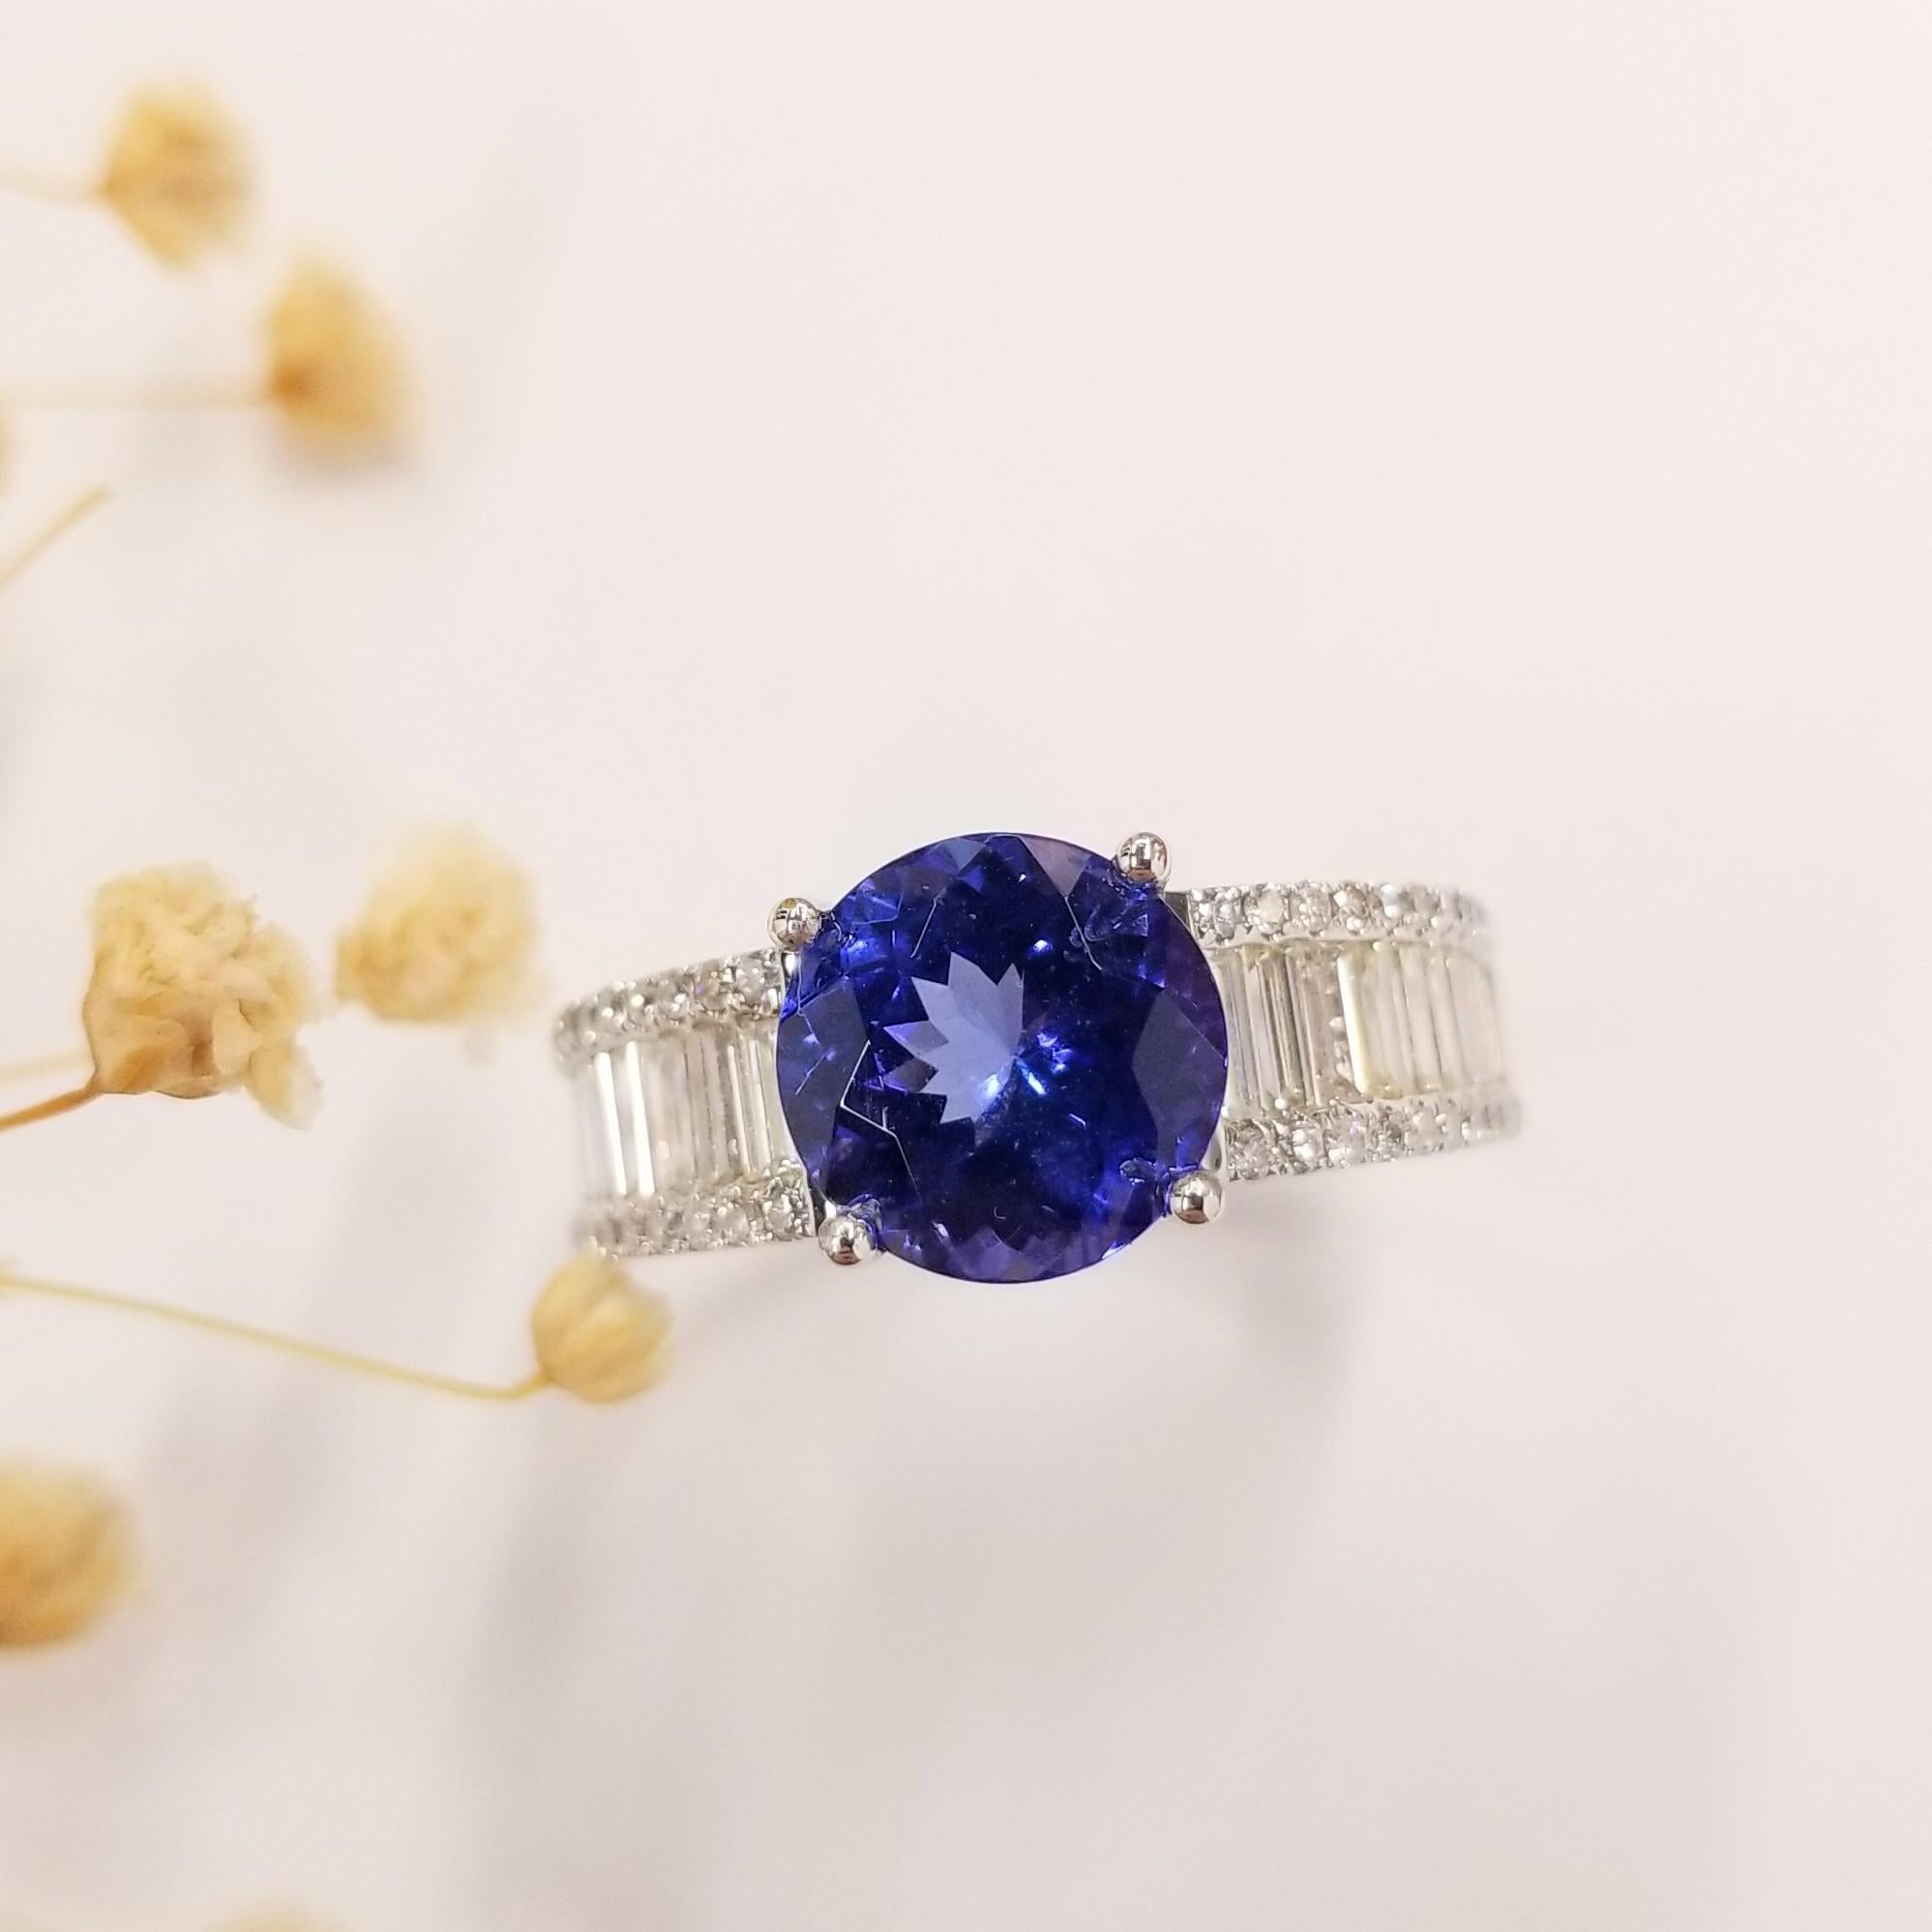 Voici un bijou remarquable conçu exclusivement pour les hommes, la Tanzanite naturelle bleu vif+violet de 4,09 carats certifiée EGL, de forme ronde rare, entourée de diamants naturels dans une bague de style moderne. Habilement réalisée en or blanc